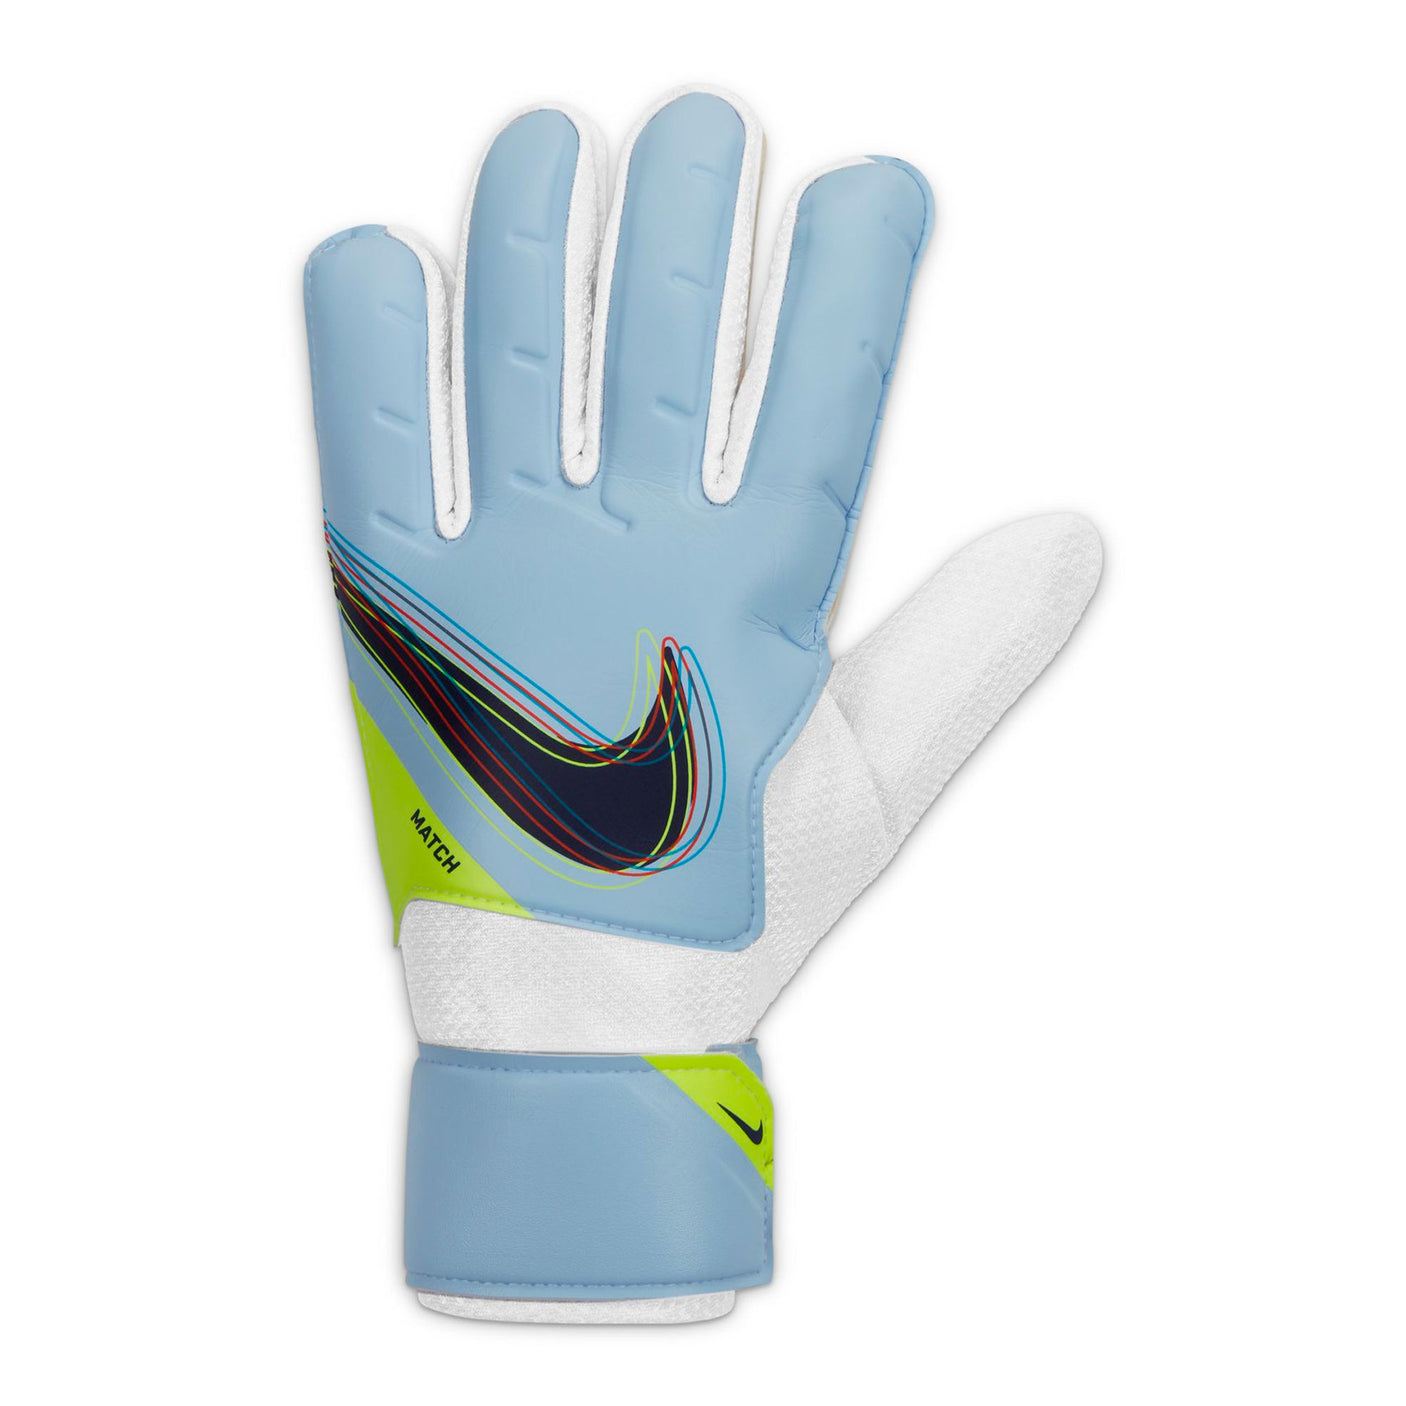 Nike Men's Goalkeeper Match Gloves Light Marine/Blackened Blue Front